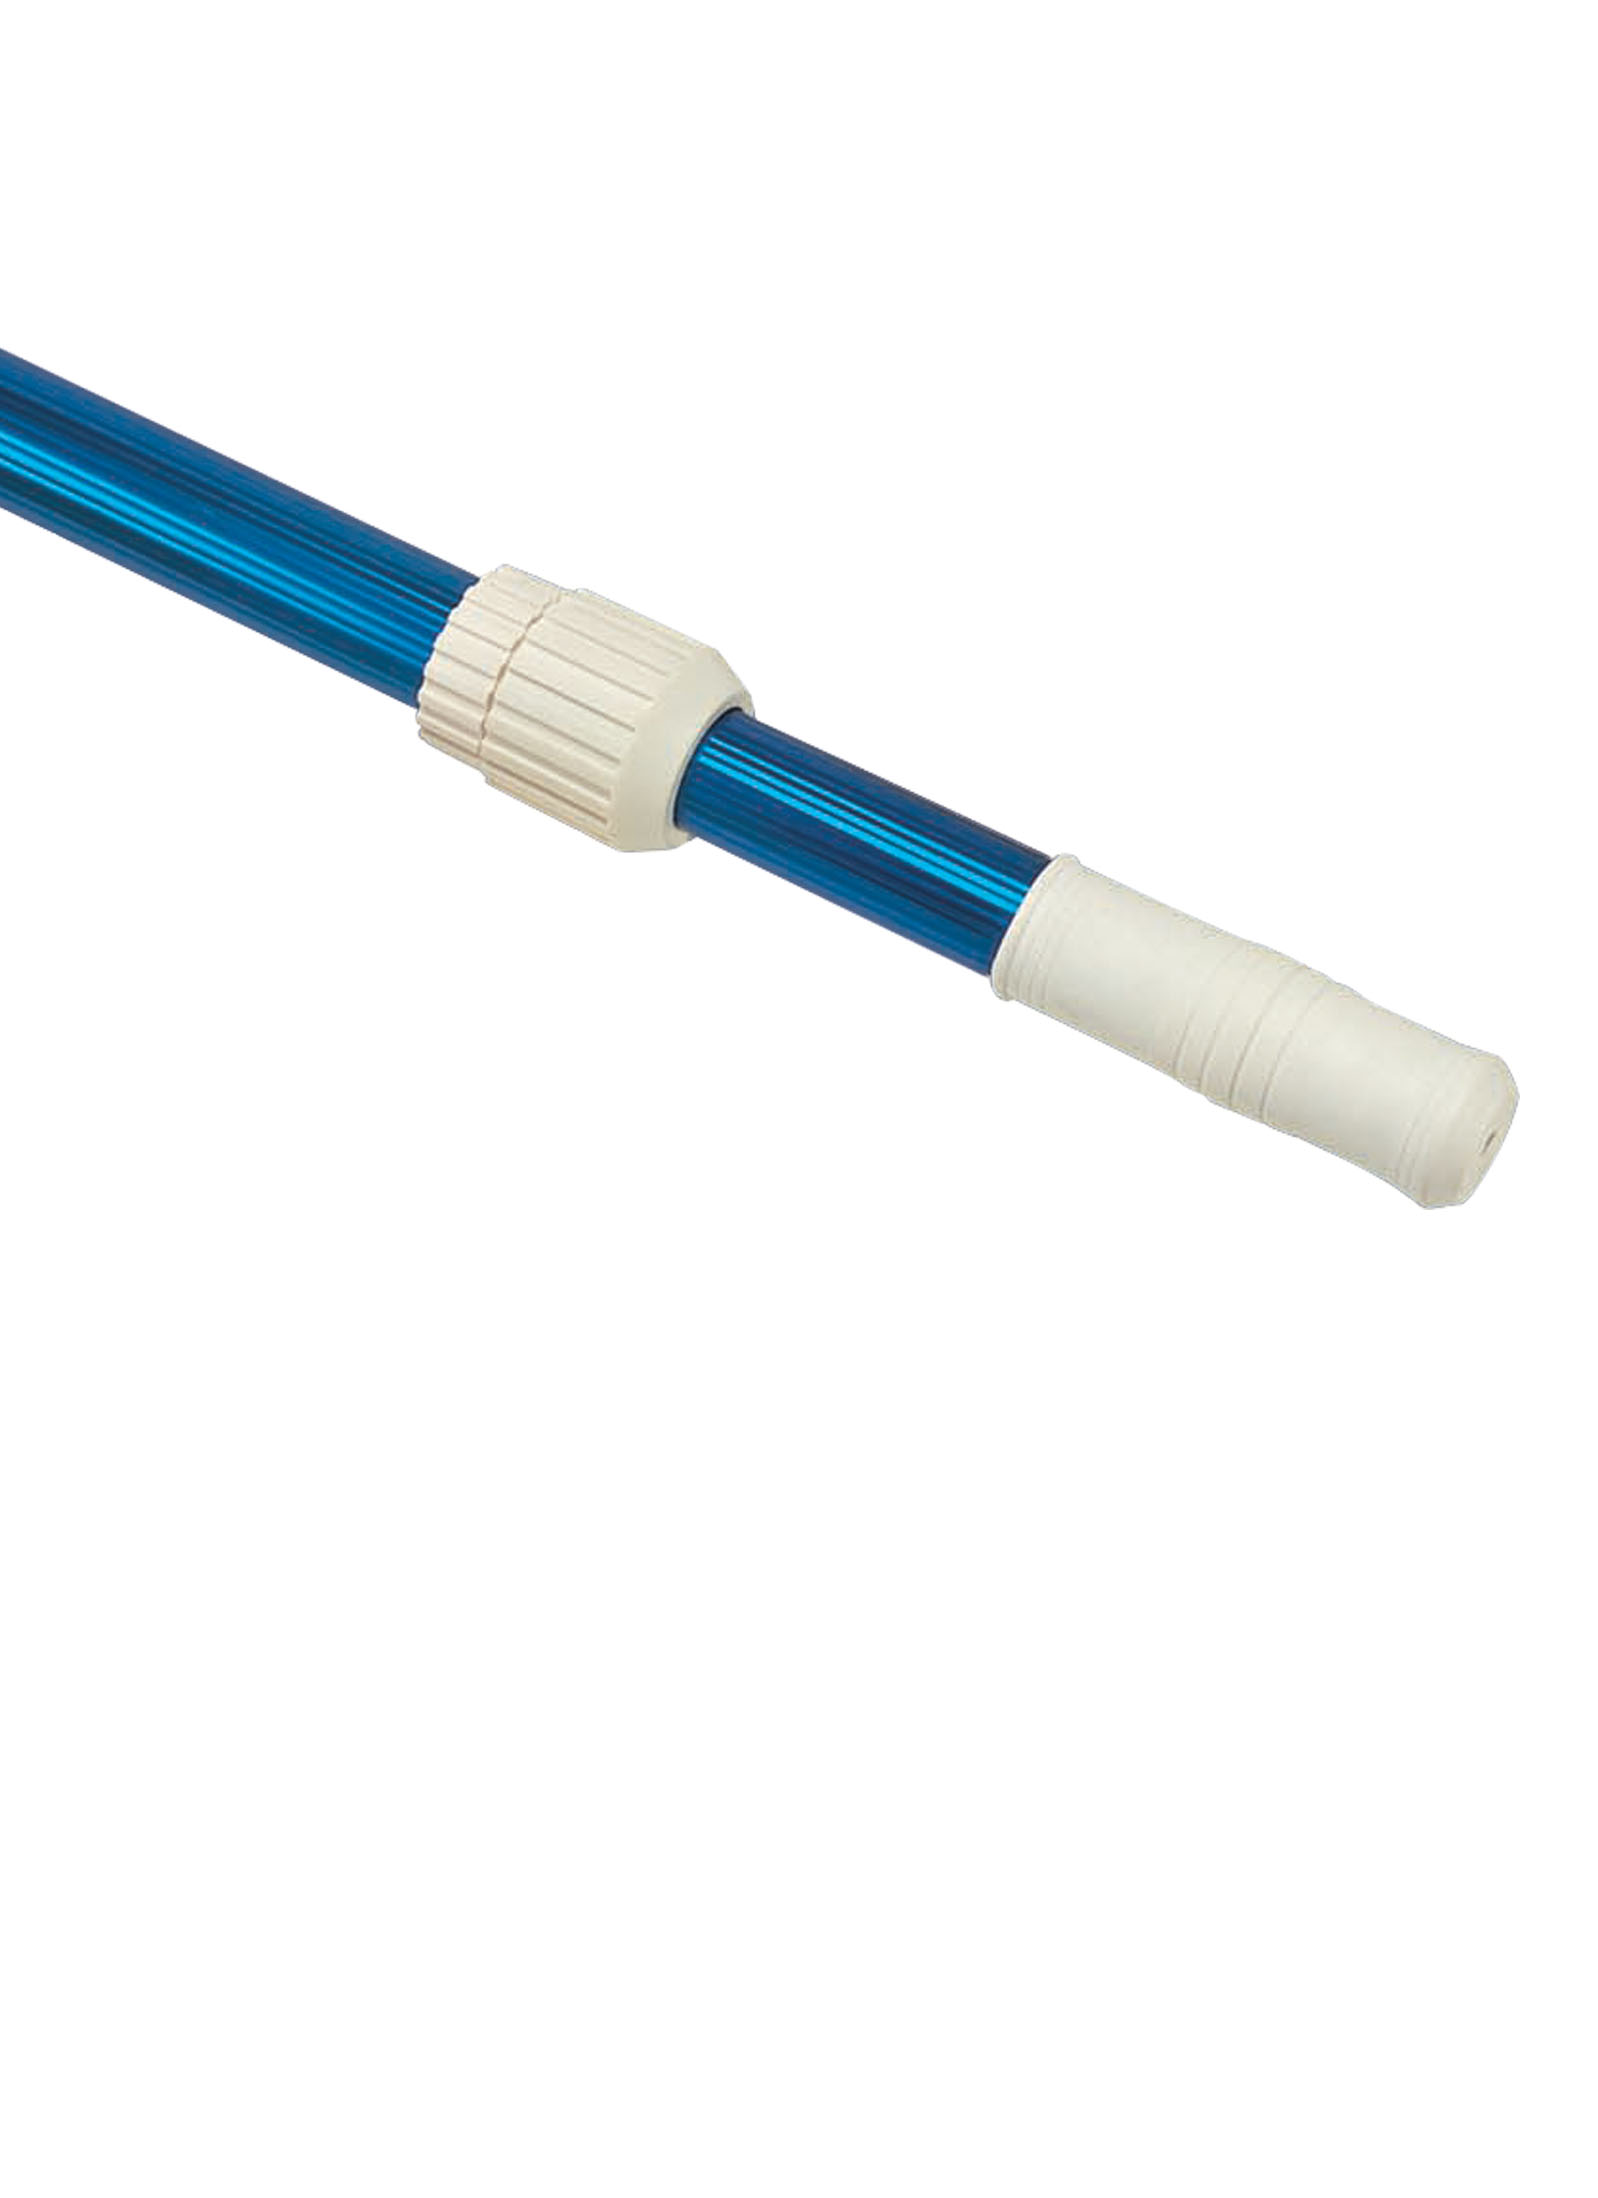 Vacuum Pole 6-12 Ft- Blue Ribbed 100010EE - VINYL REPAIR KITS